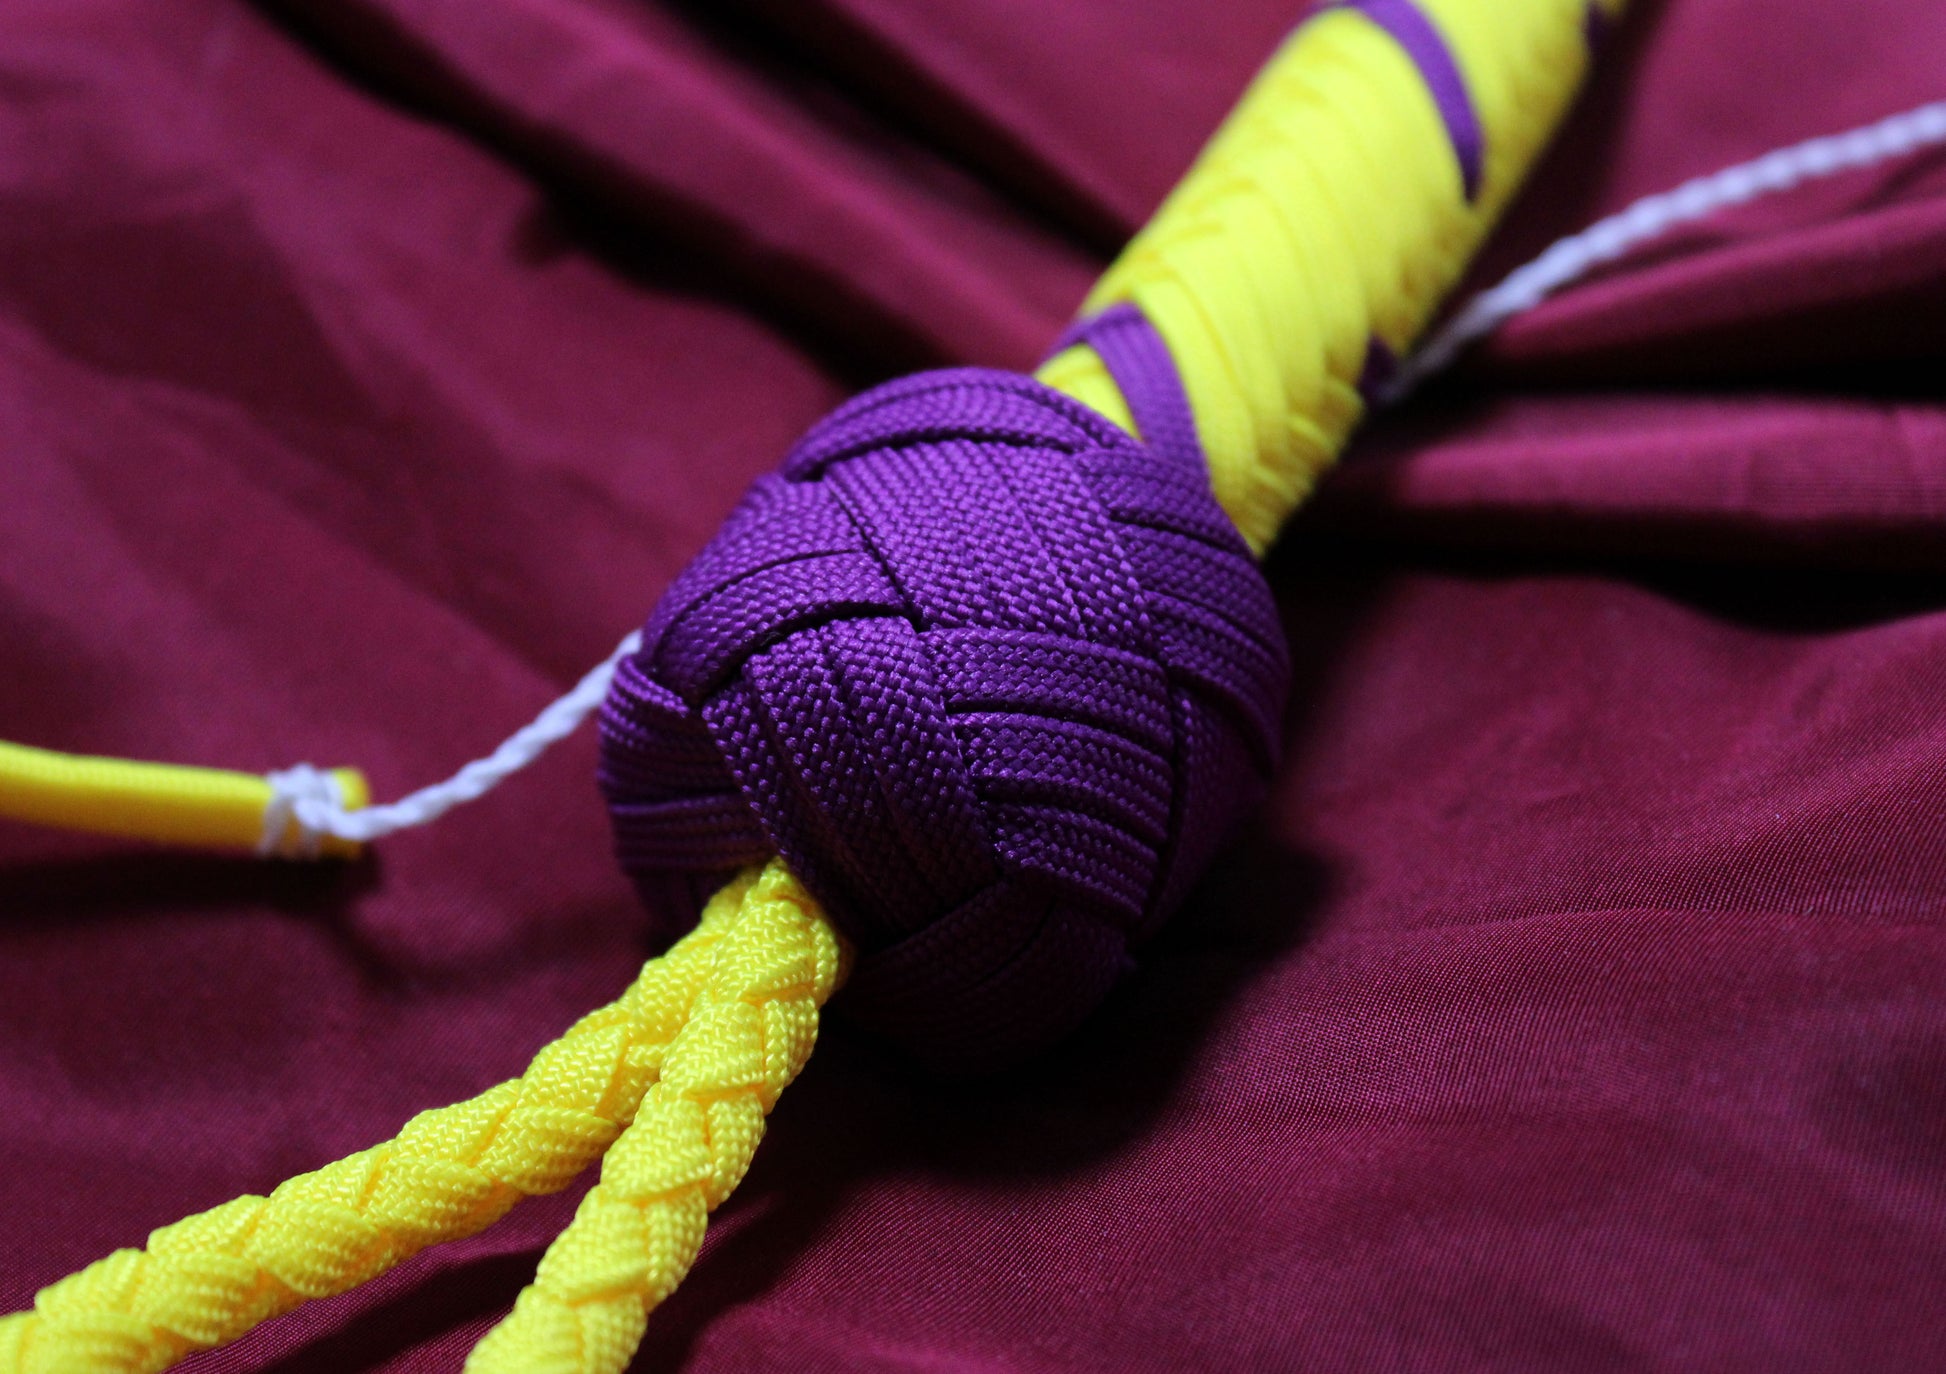 détail du knot violet, tranchant avec le fond jaune du reste du fouet